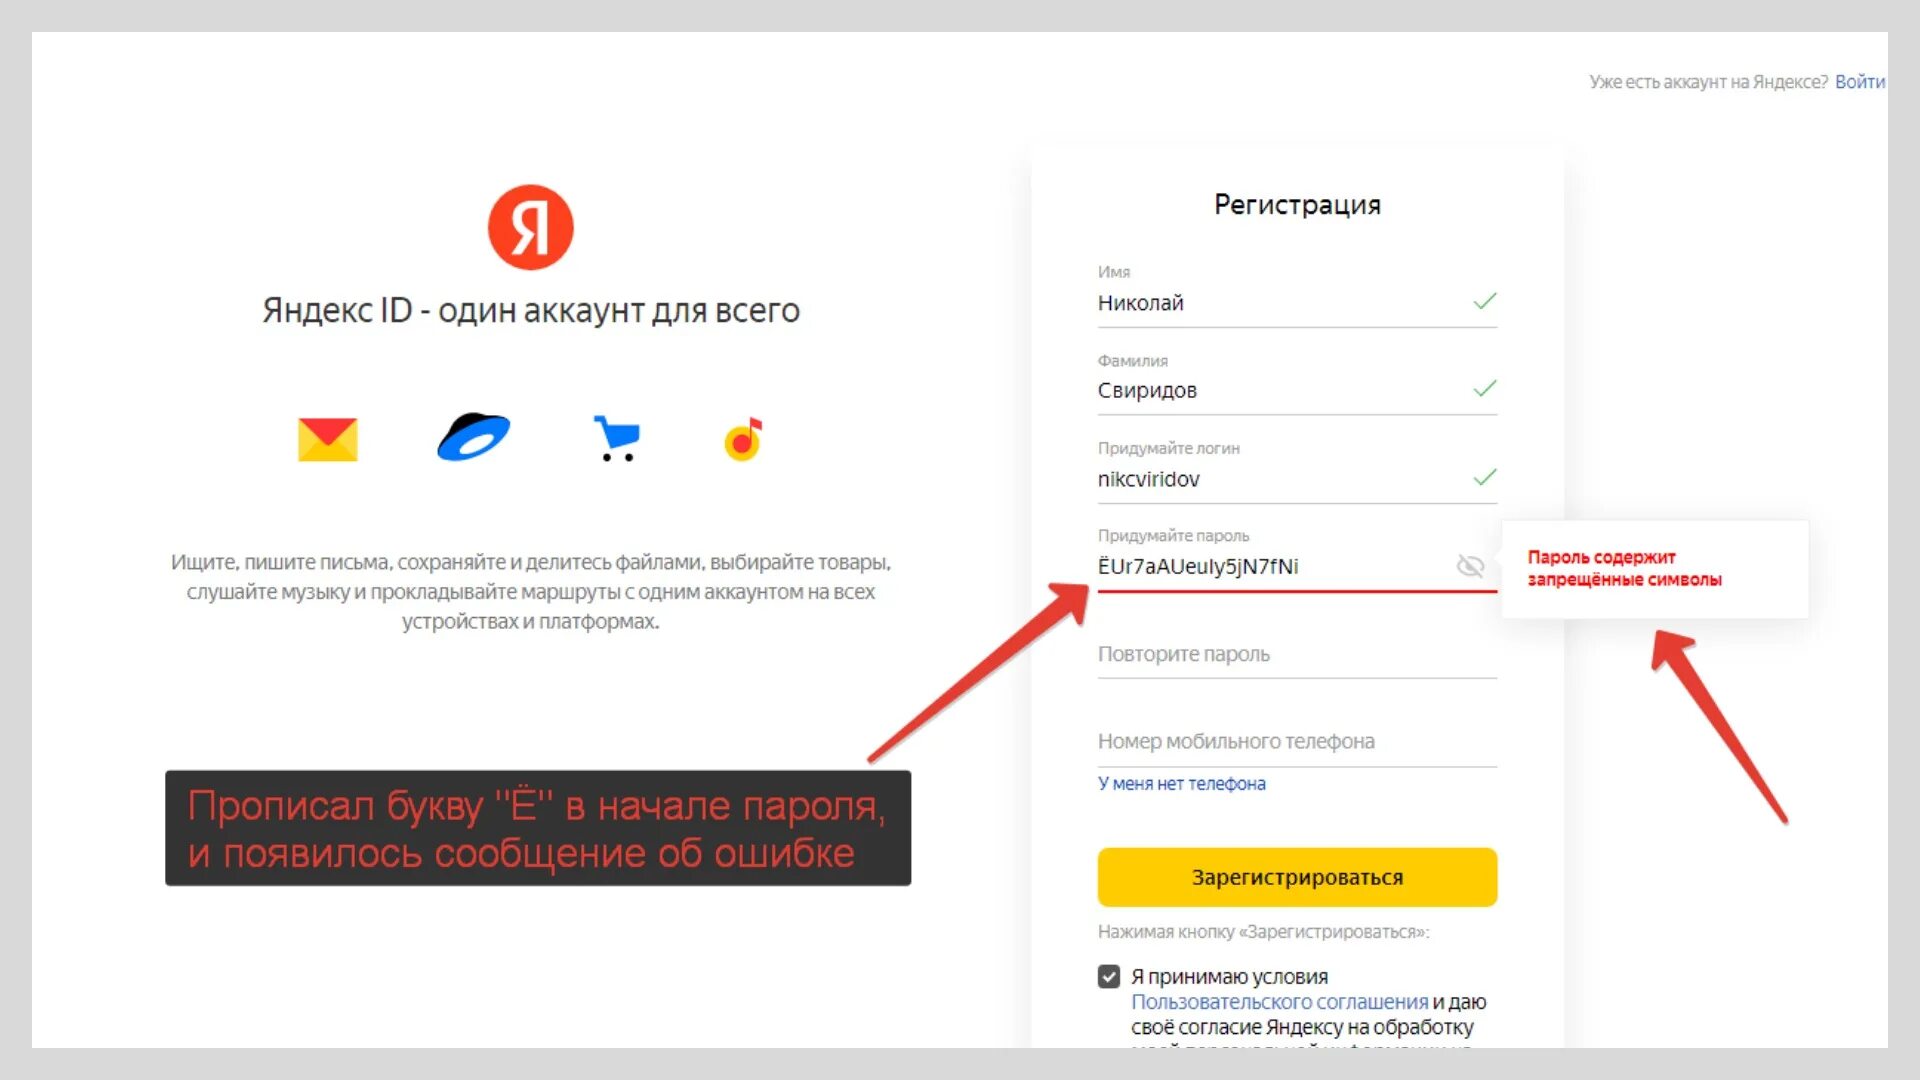 Создать аккаунт яндекса новый. Зарегистрироваться в Яндексе. Завести аккаунт на Яндексе.